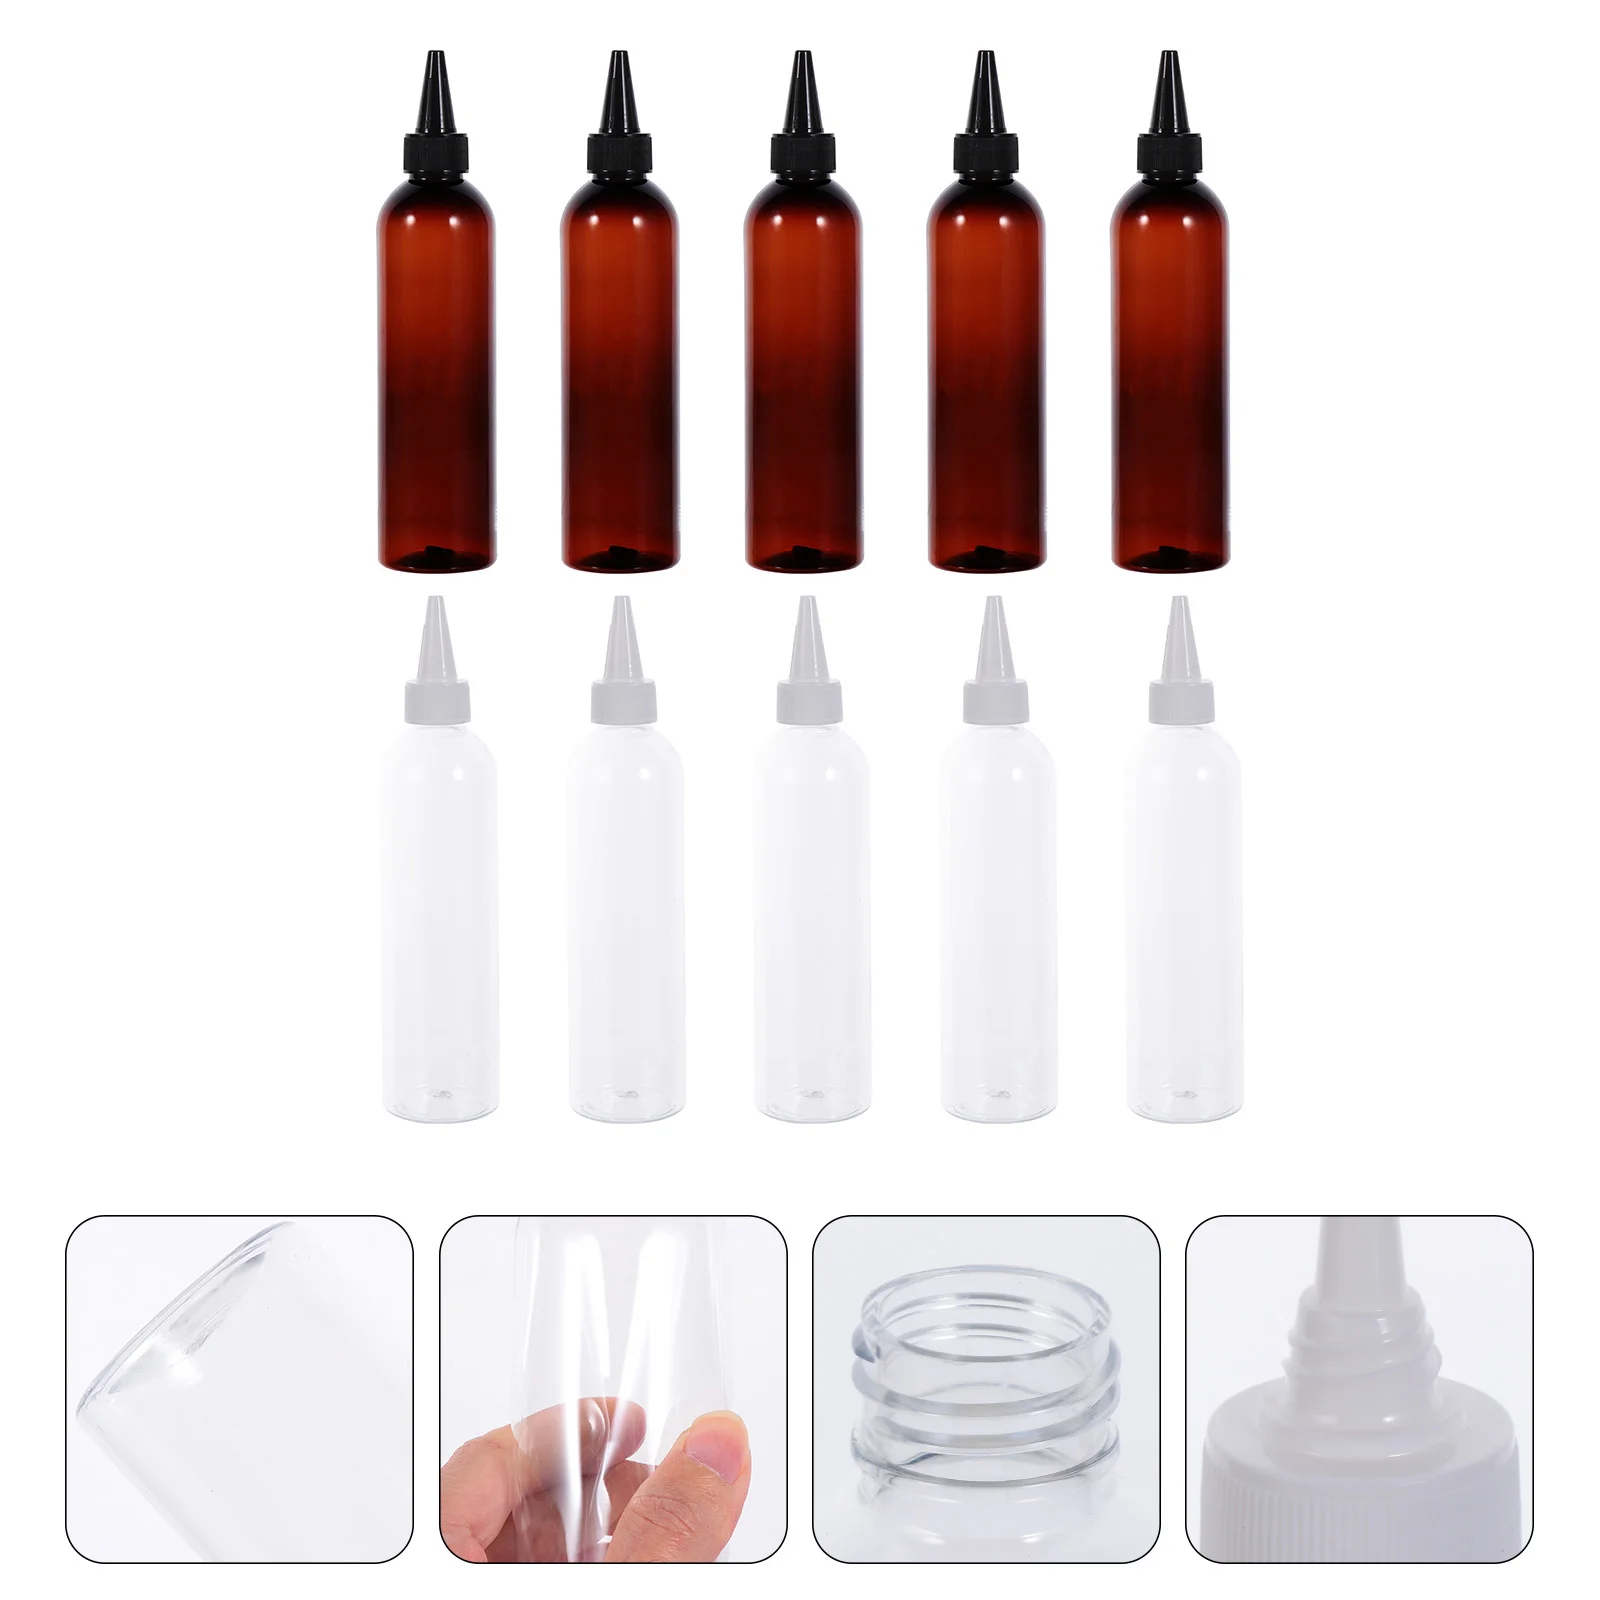 

10 Pcs Empty Bottle Lotion Refillable Holder Shampoo Travel Dispenser Hair Dye Bottles Pack Toiletry